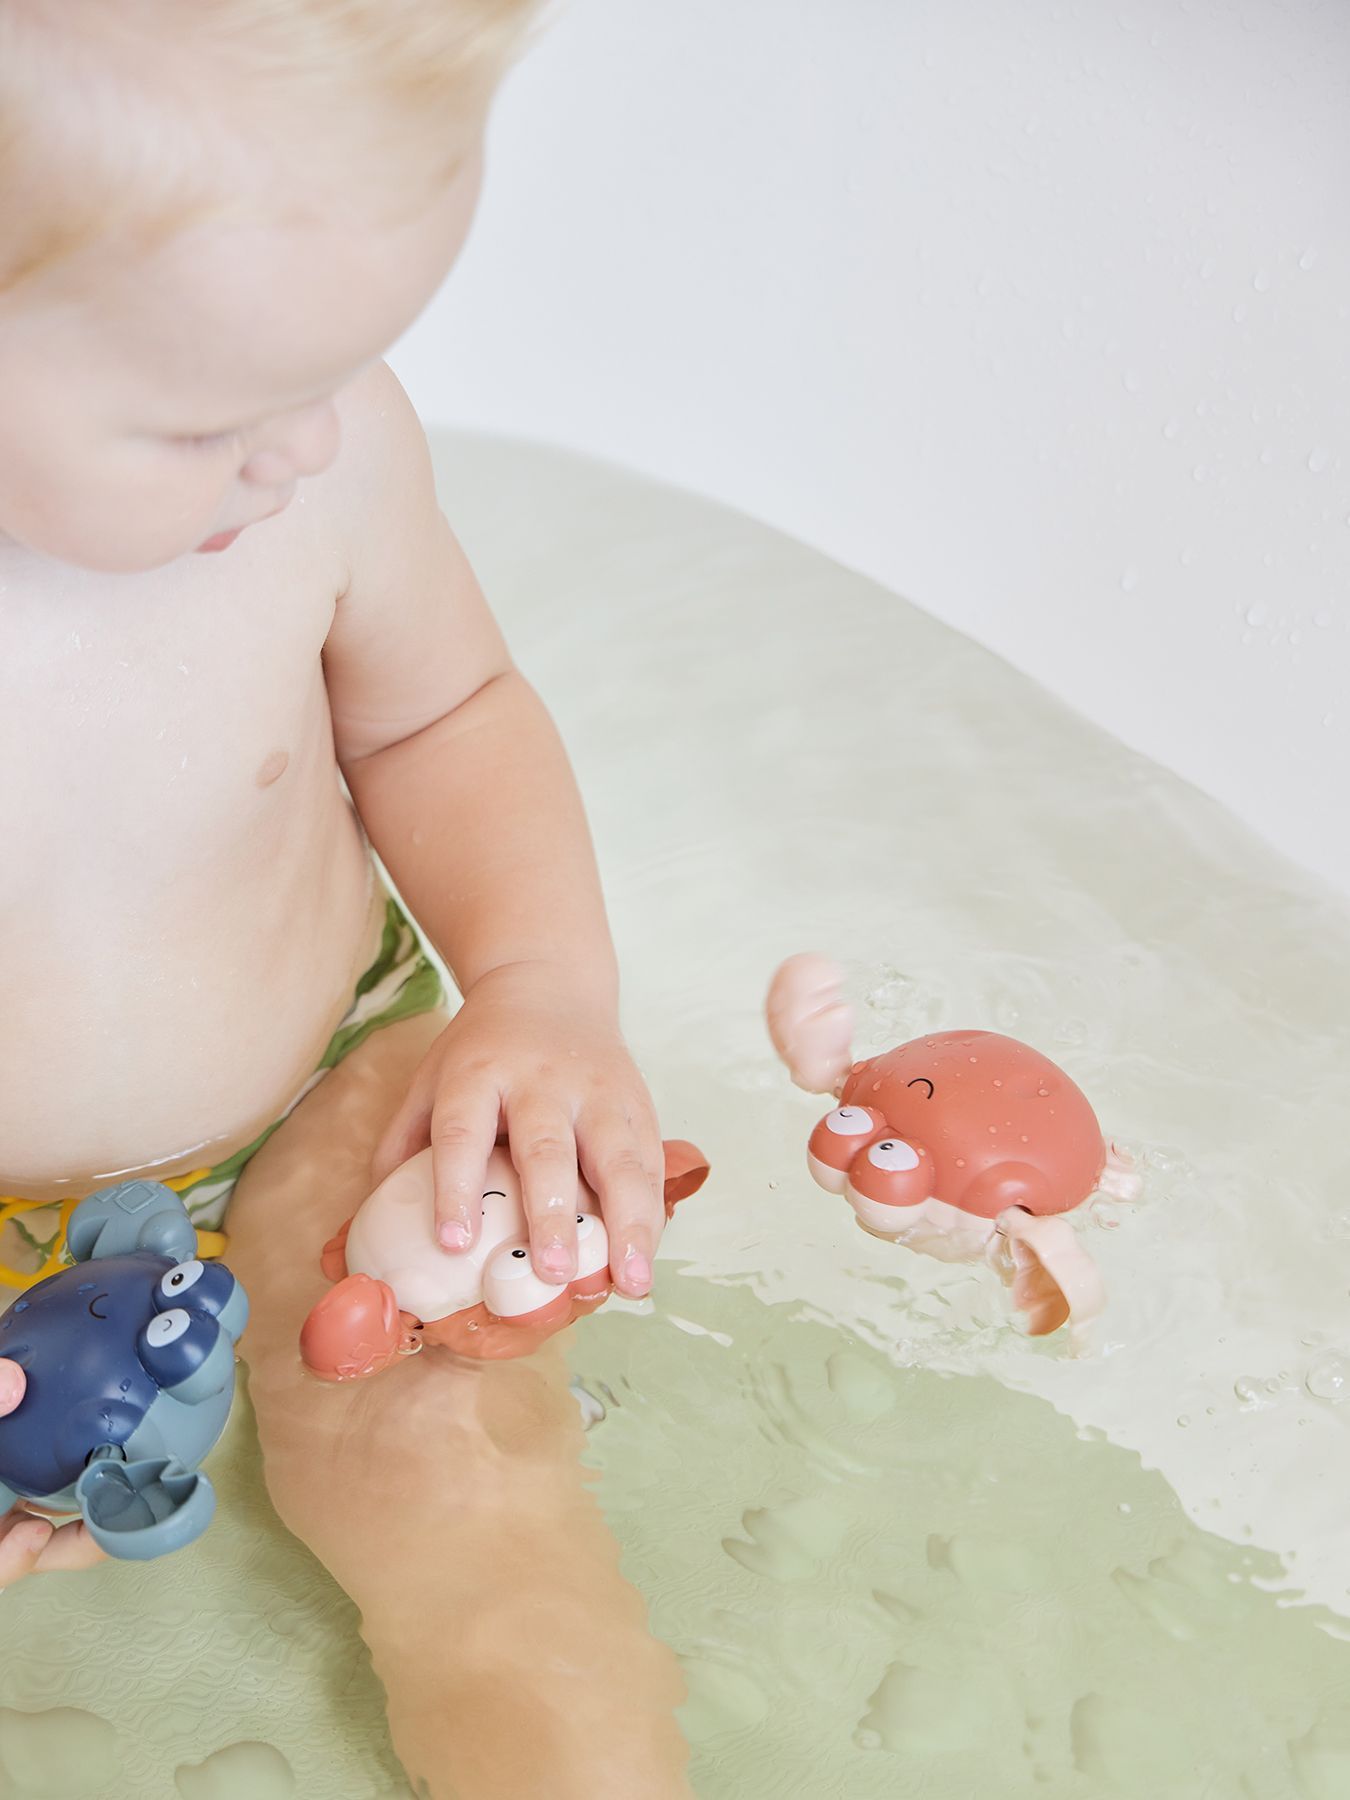 Заводная игрушка для ванной SWIMMING CRAB Happy Baby